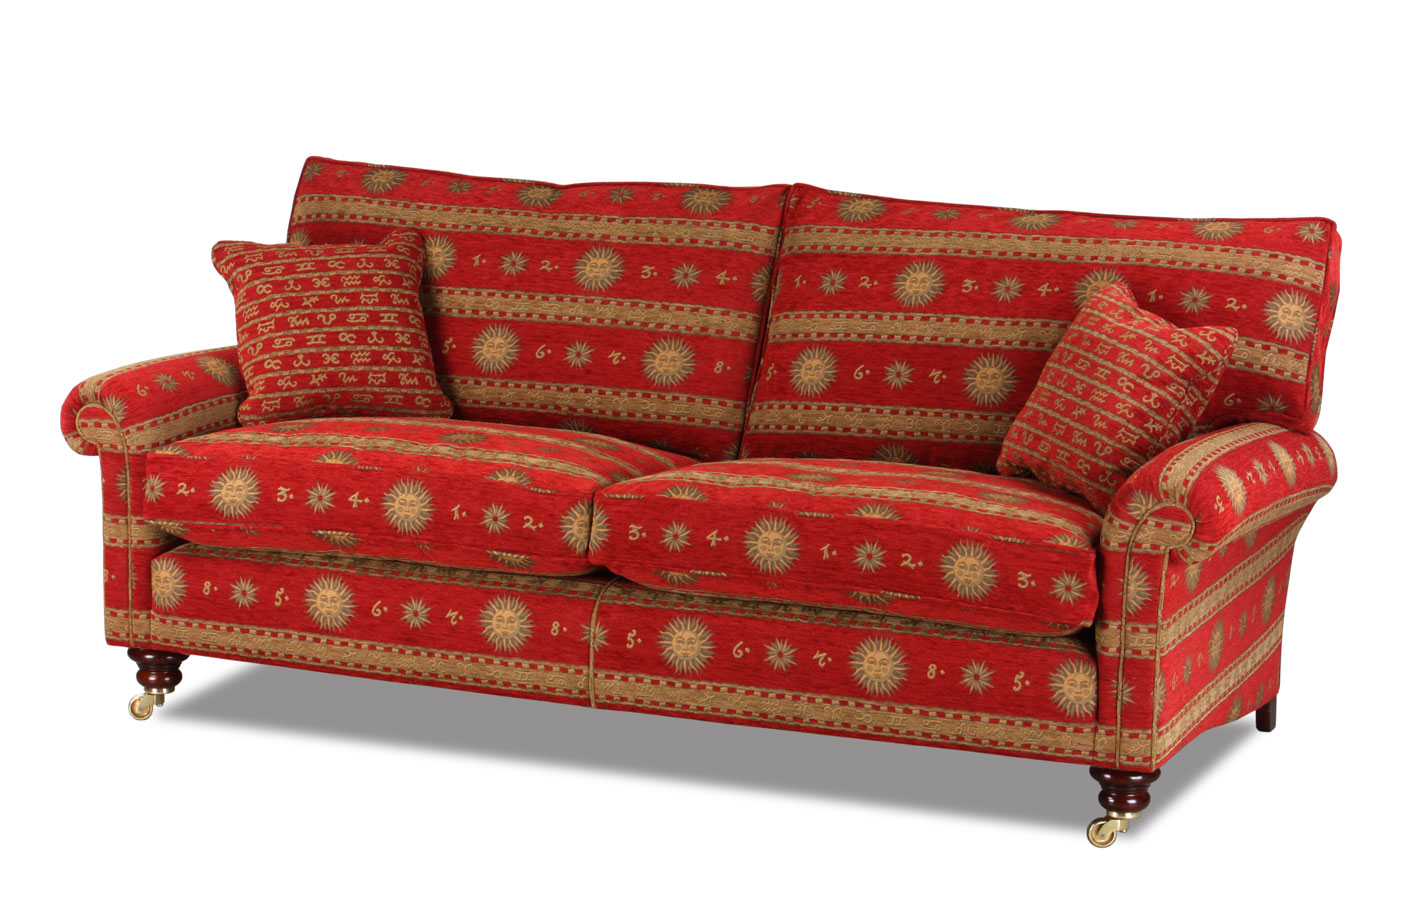 Bild vom Hamilton Landhausstil Sofa im rotem Stoffbezug Olympia Red